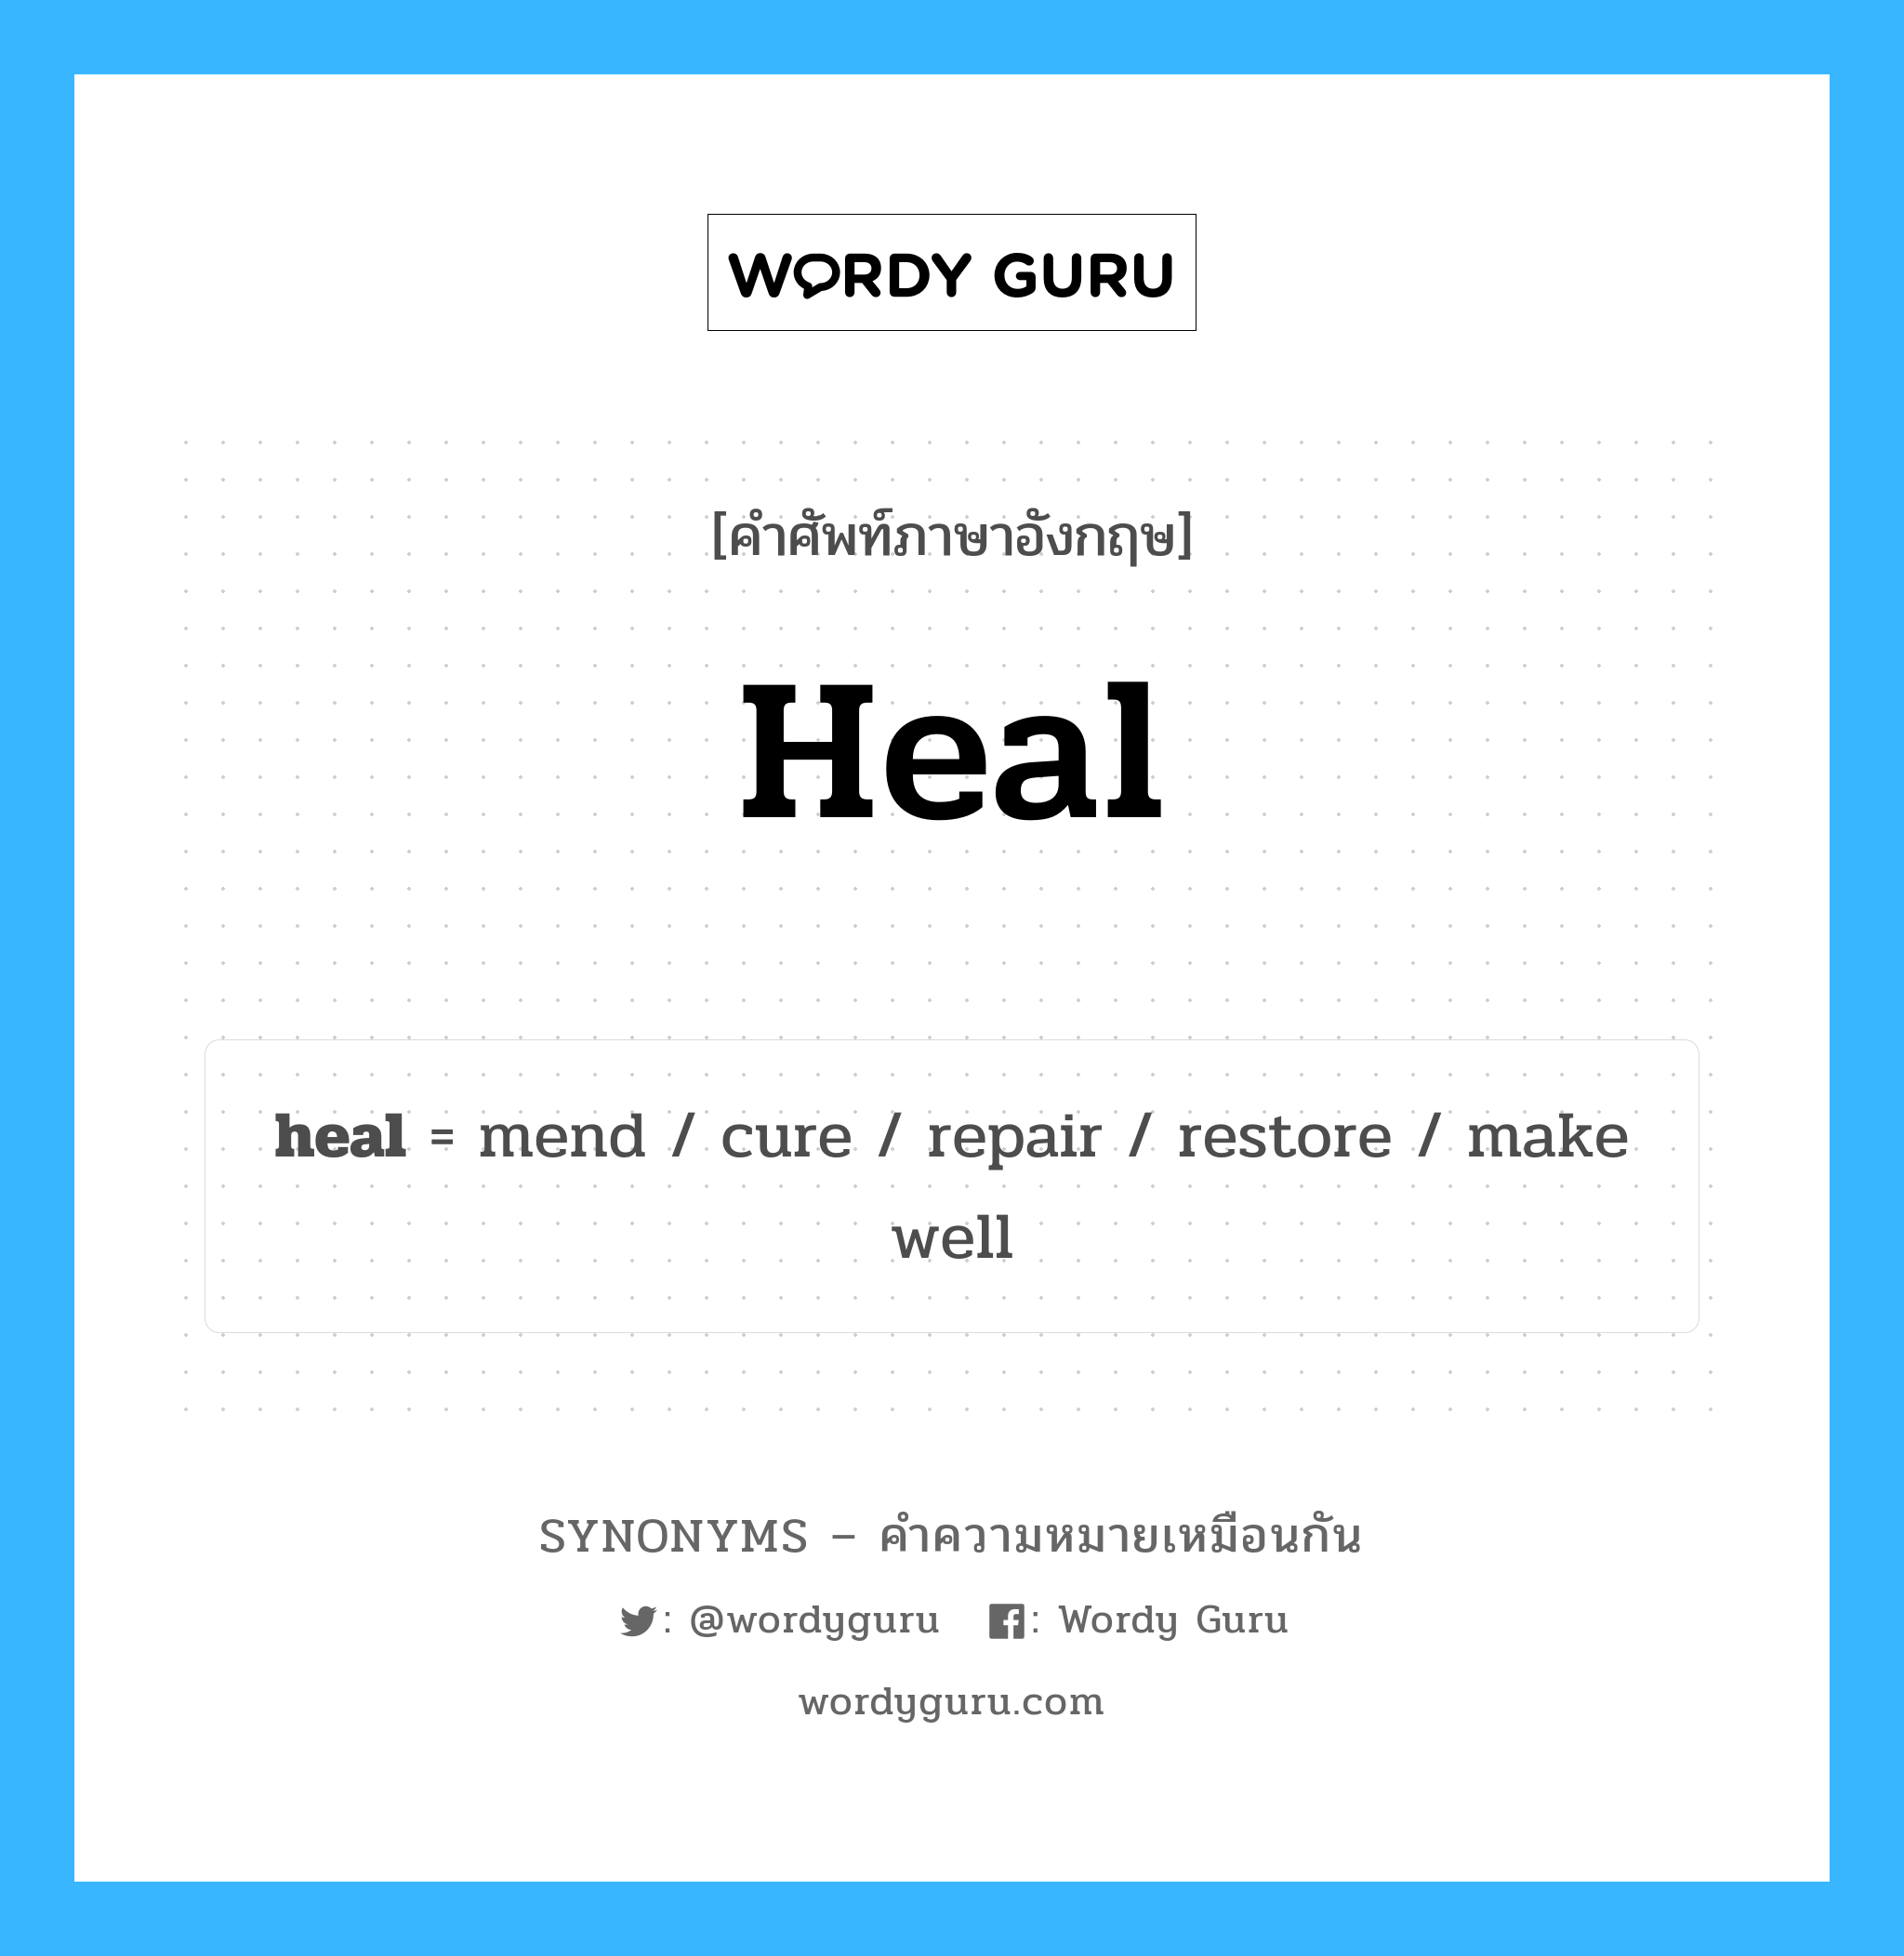 make well เป็นหนึ่งใน cure และมีคำอื่น ๆ อีกดังนี้, คำศัพท์ภาษาอังกฤษ make well ความหมายคล้ายกันกับ heal แปลว่า ทำได้ดี หมวด heal